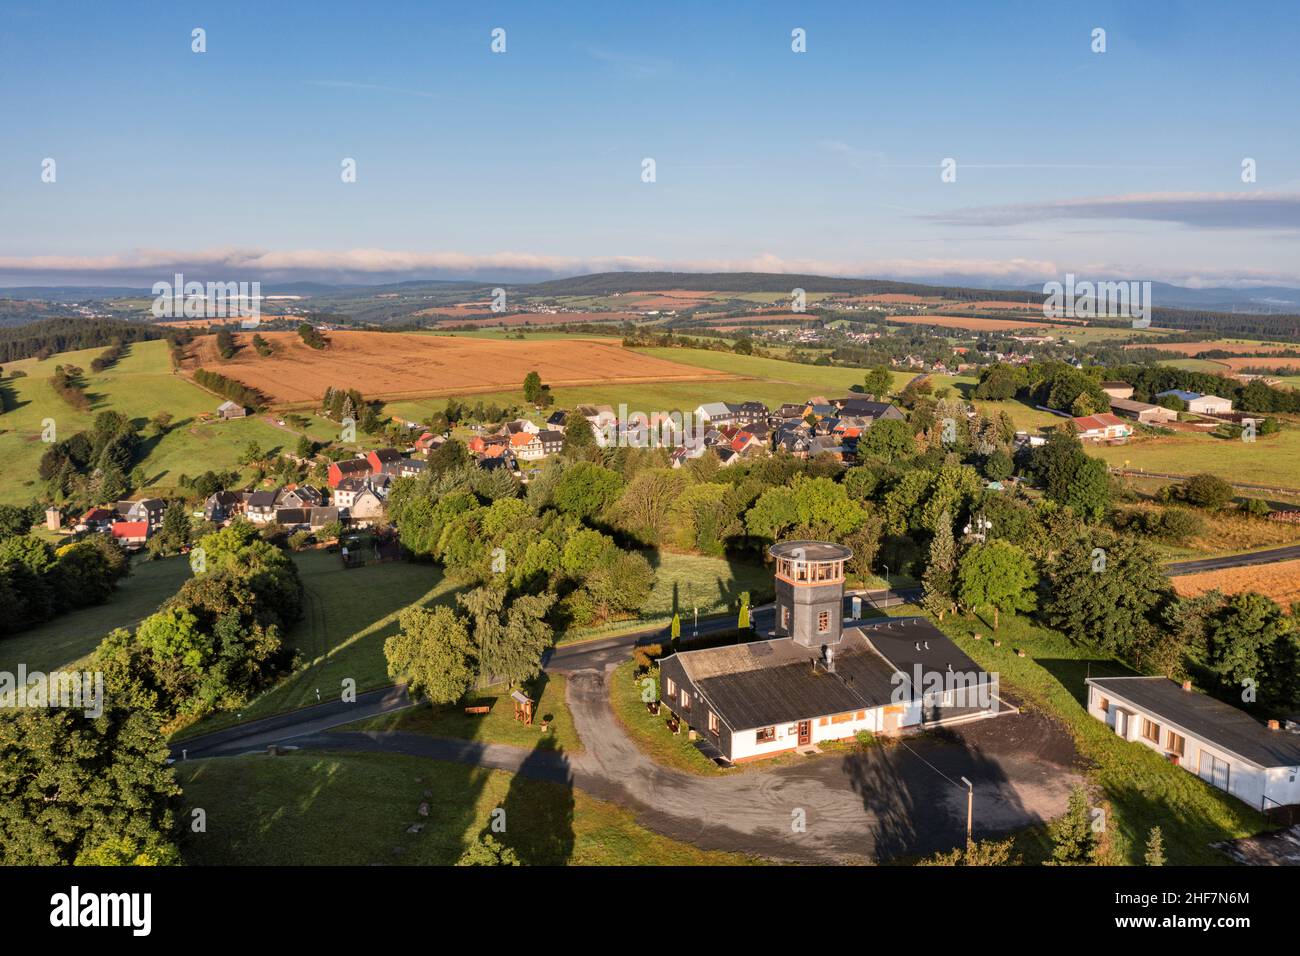 Germania, Turingia, Königsee, Barigau, torre di osservazione, ristorante, campi, villaggio sullo sfondo, panoramica, vista aerea Foto Stock